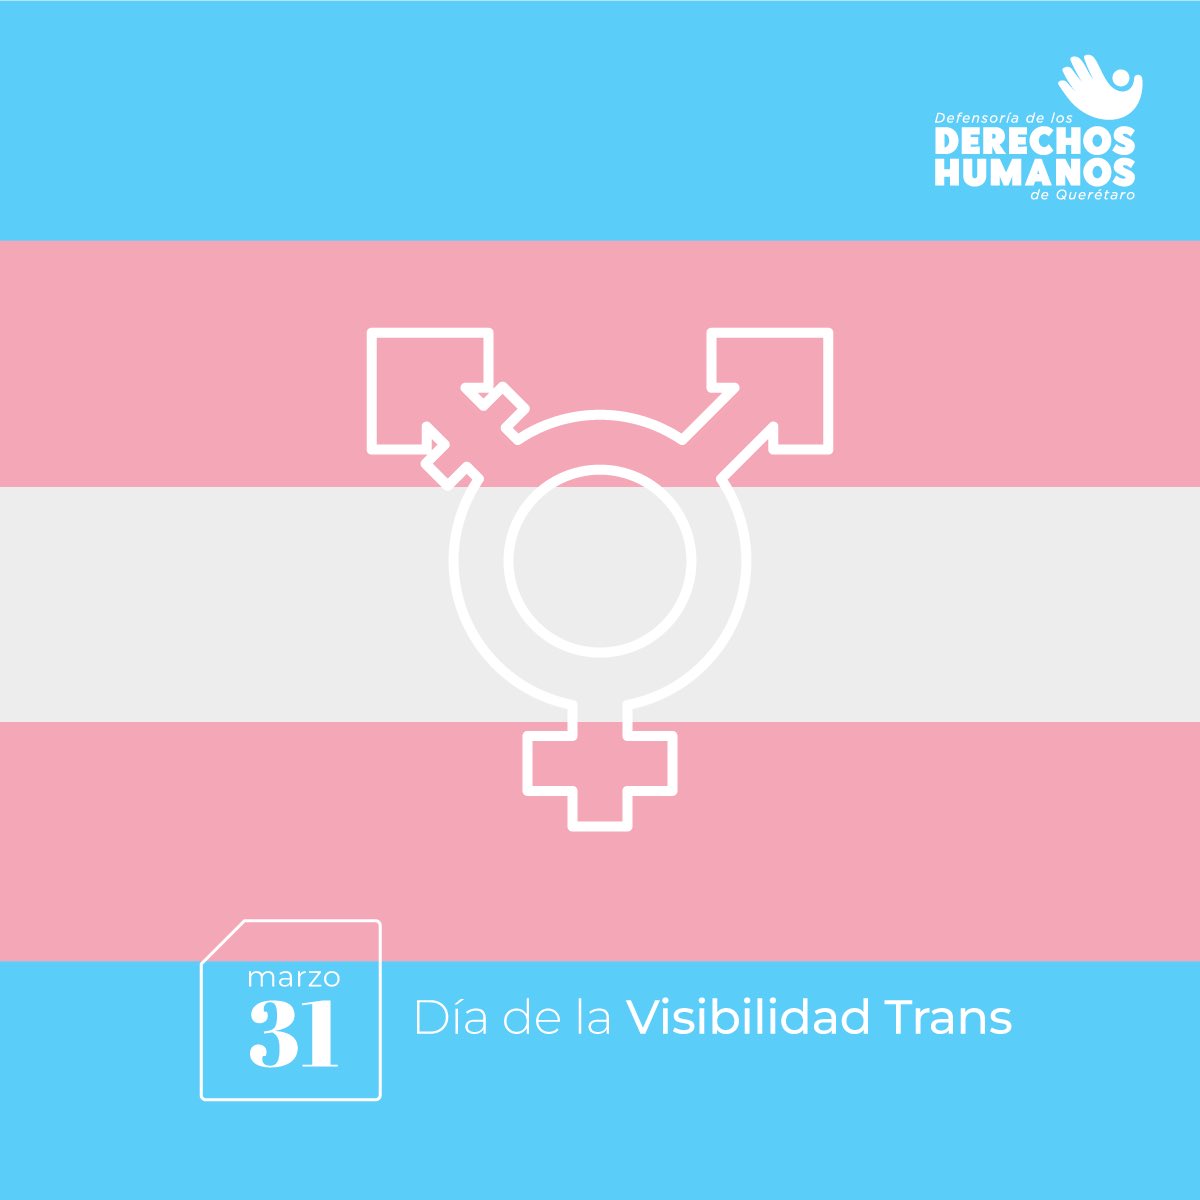 Ser trans es una manifestación más de la gran diversidad de la naturaleza humana. Las personas trans forman parte esencial de las comunidades y culturas, y así ha sido a lo largo de la historia. Por un mundo en el que todas las personas seamos libres e iguales. #hechasdeloMISMO